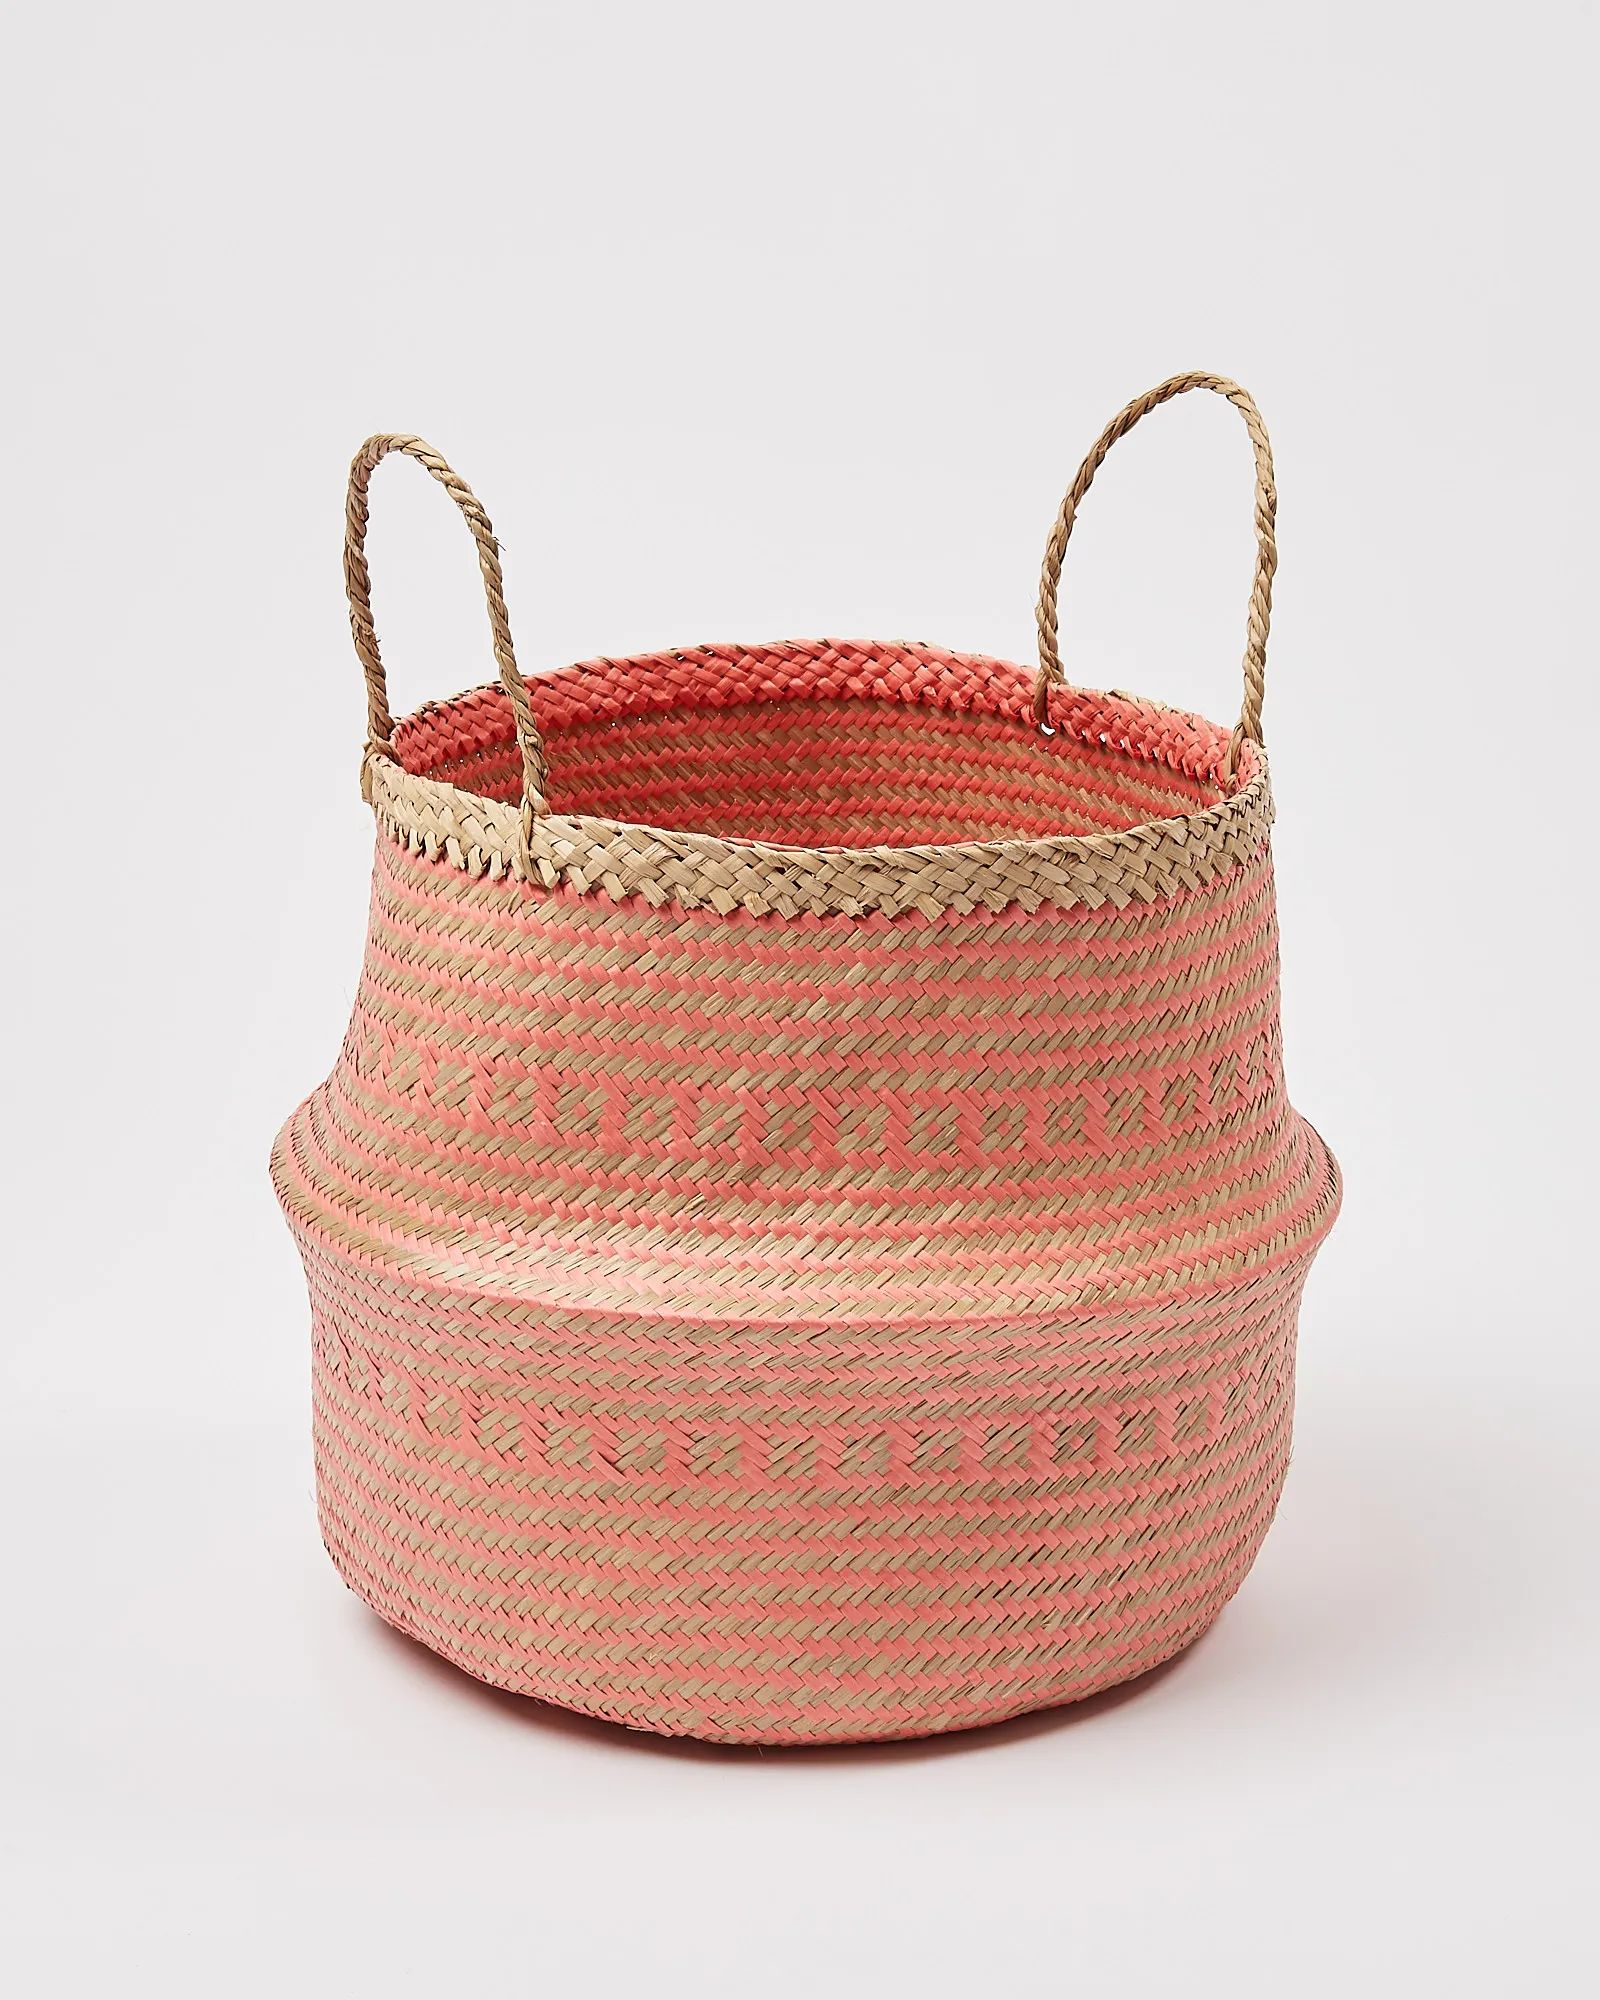 Patterned Seagrass Storage Baskets | Oliver Bonas | Oliver Bonas (Global)